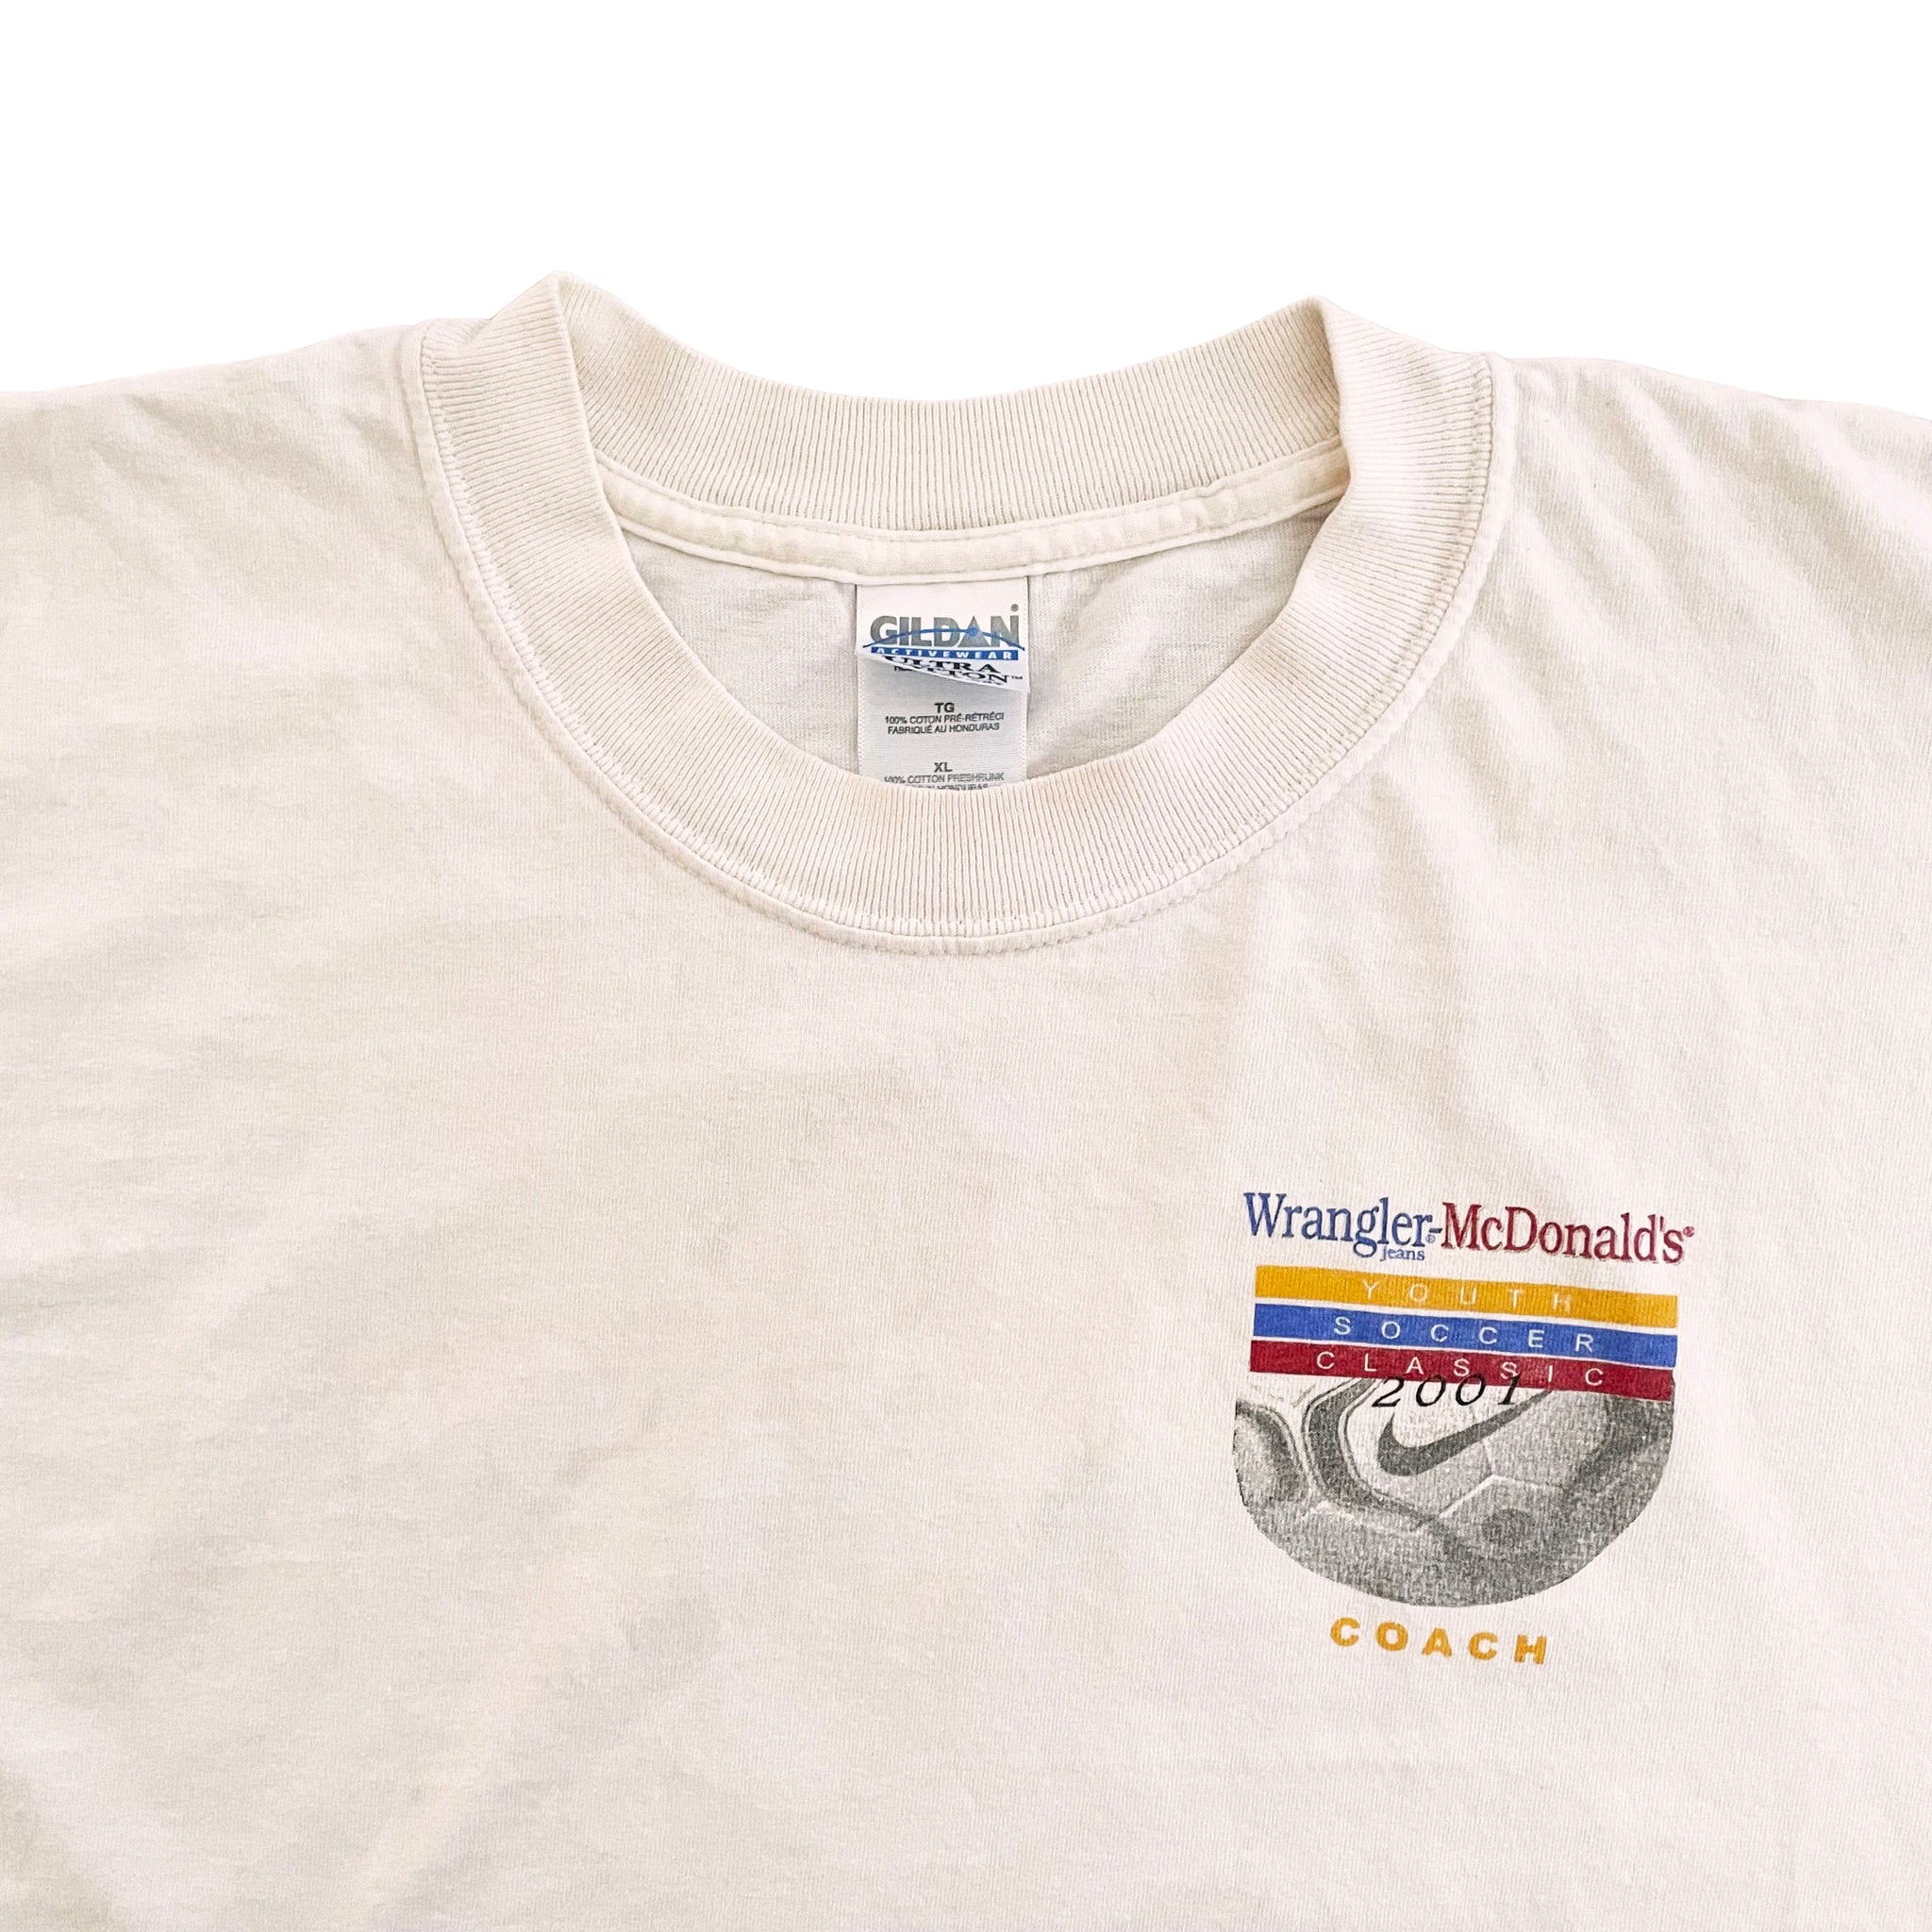 Wrangler-McDonald's Tourney T-Shirt - XL